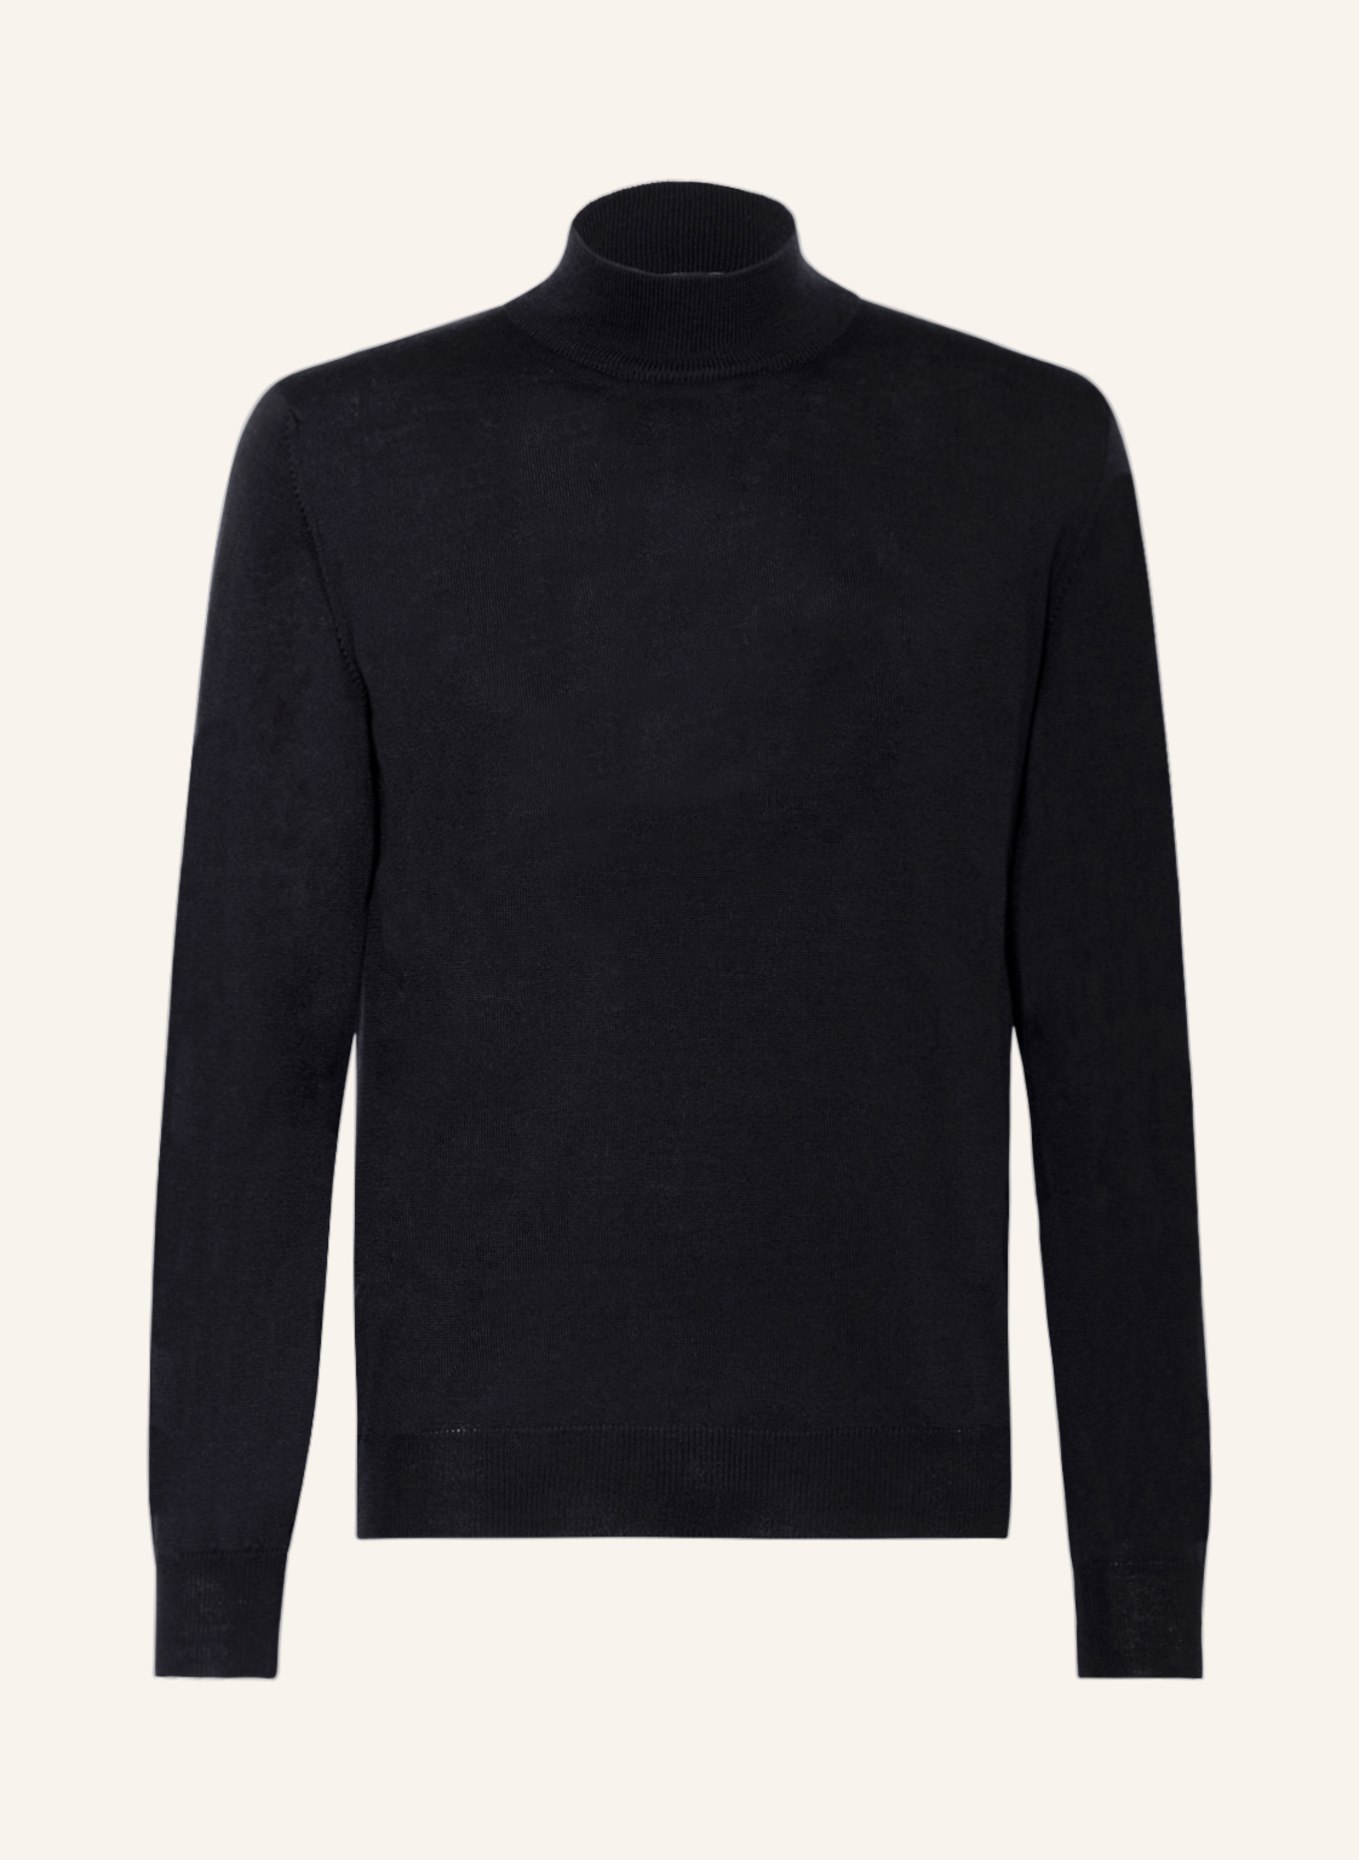 EDUARD DRESSLER Pullover, Farbe: DUNKELBLAU (Bild 1)